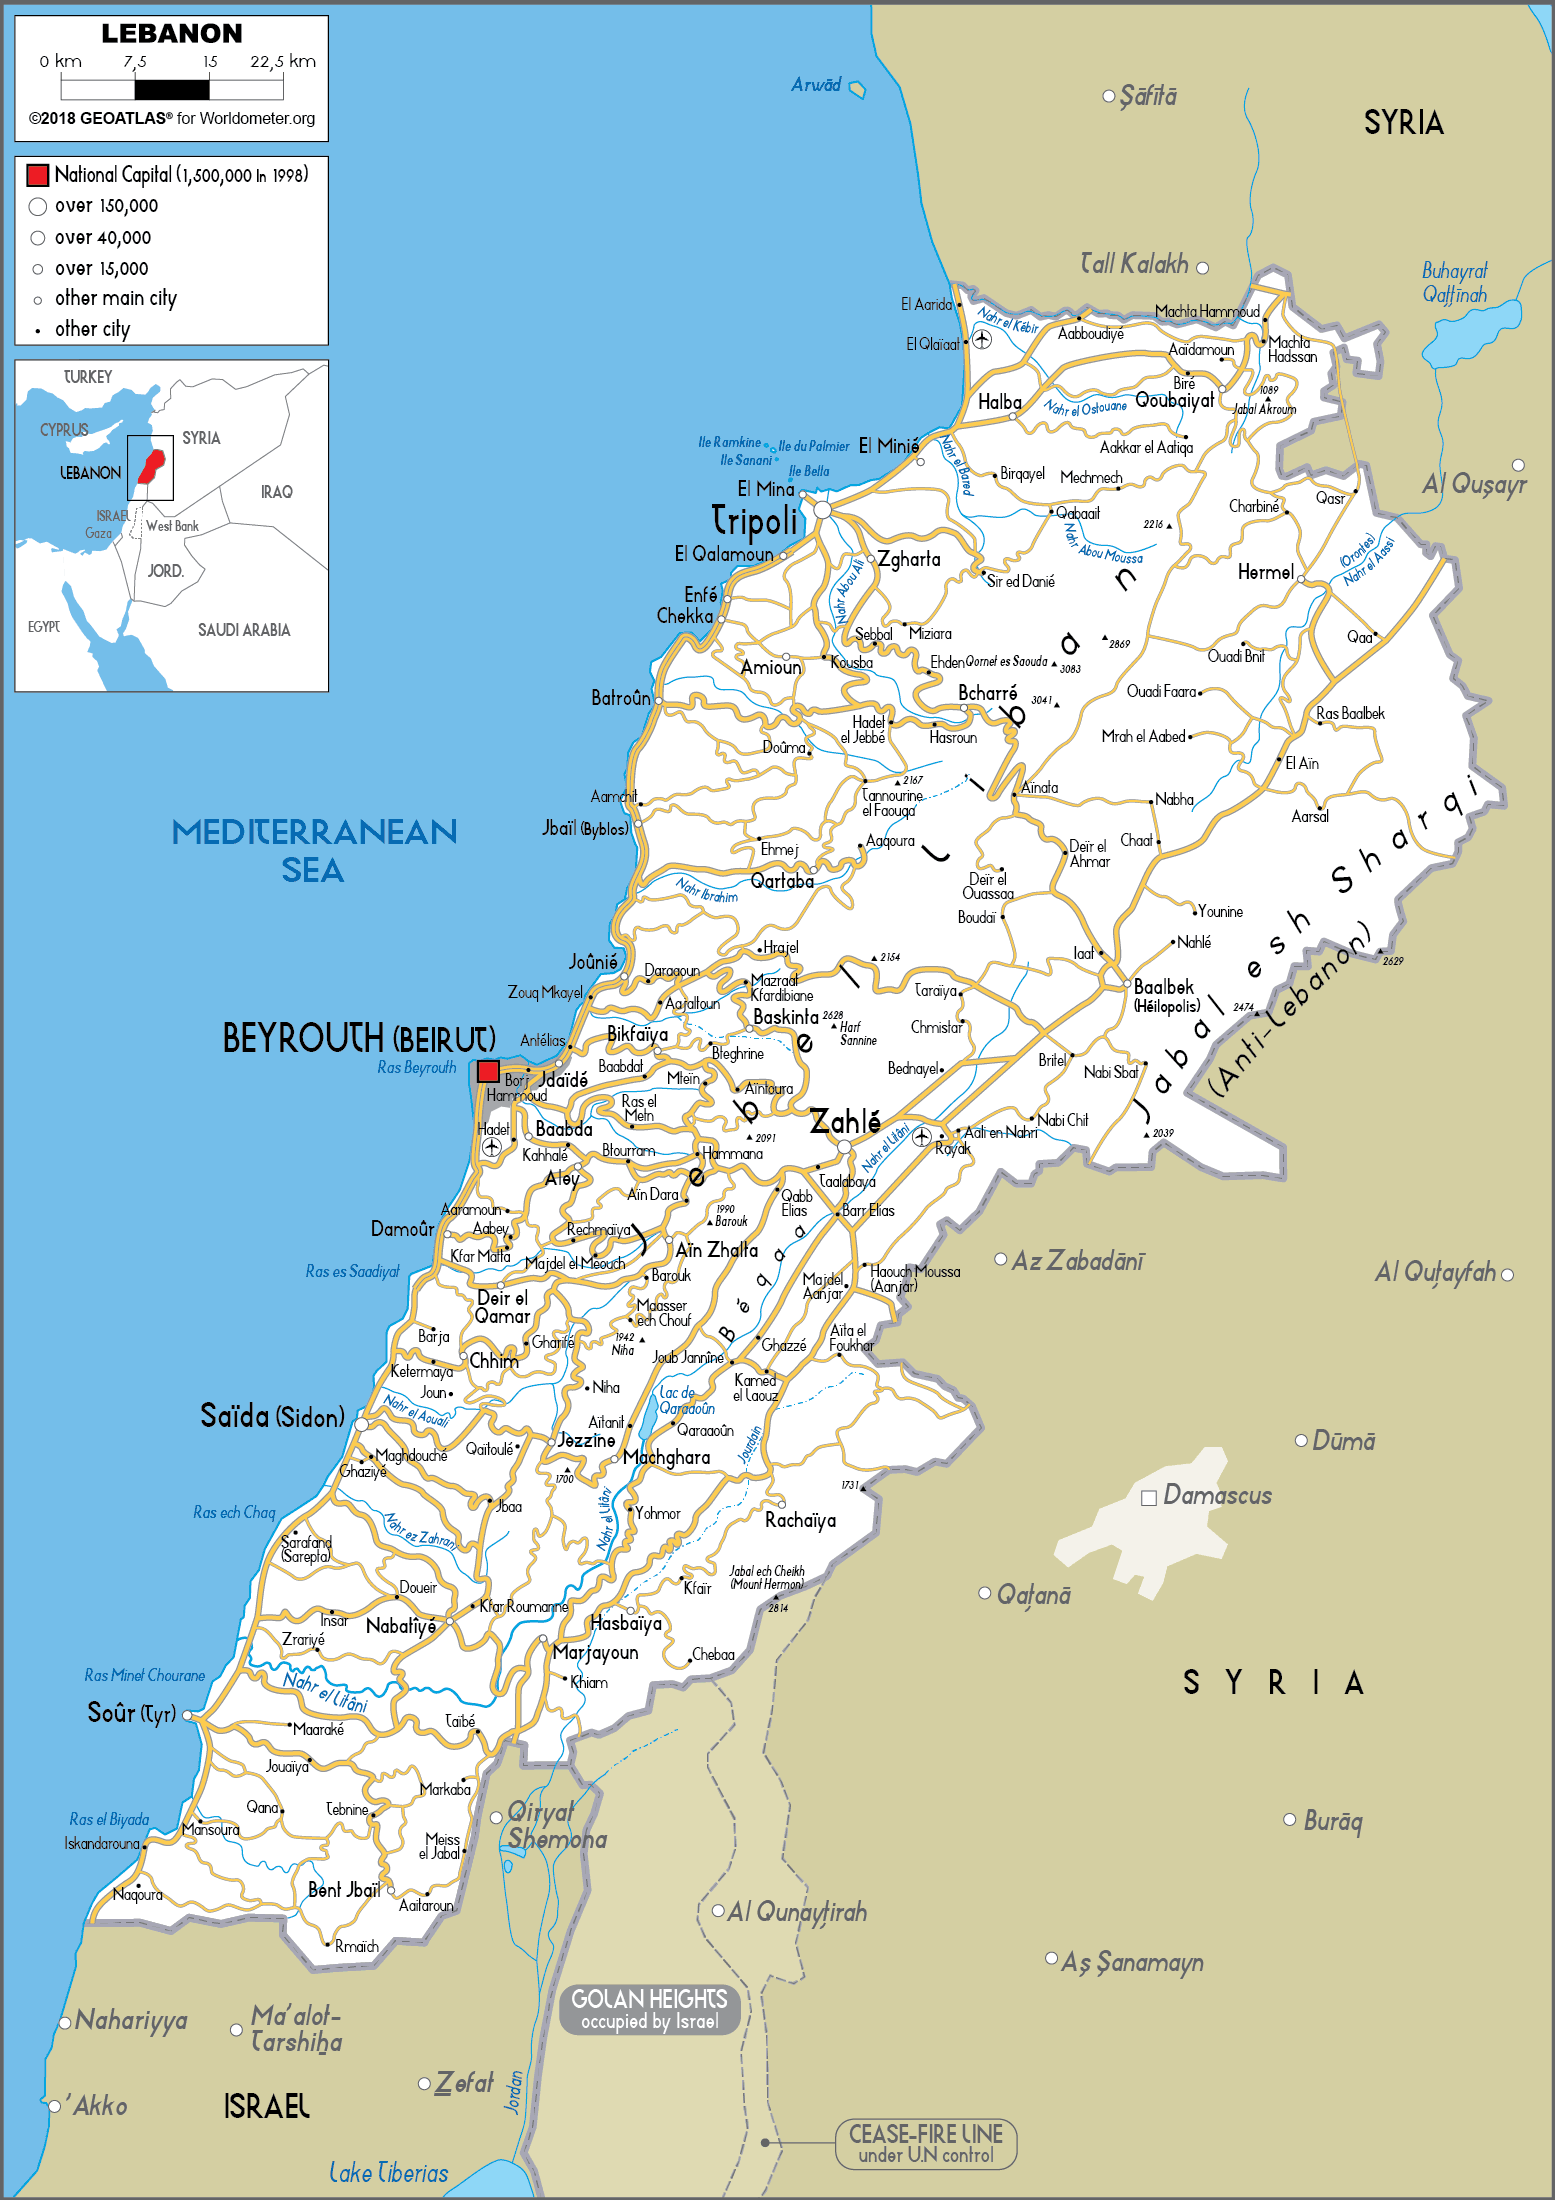 12113843 1 Liban Map 